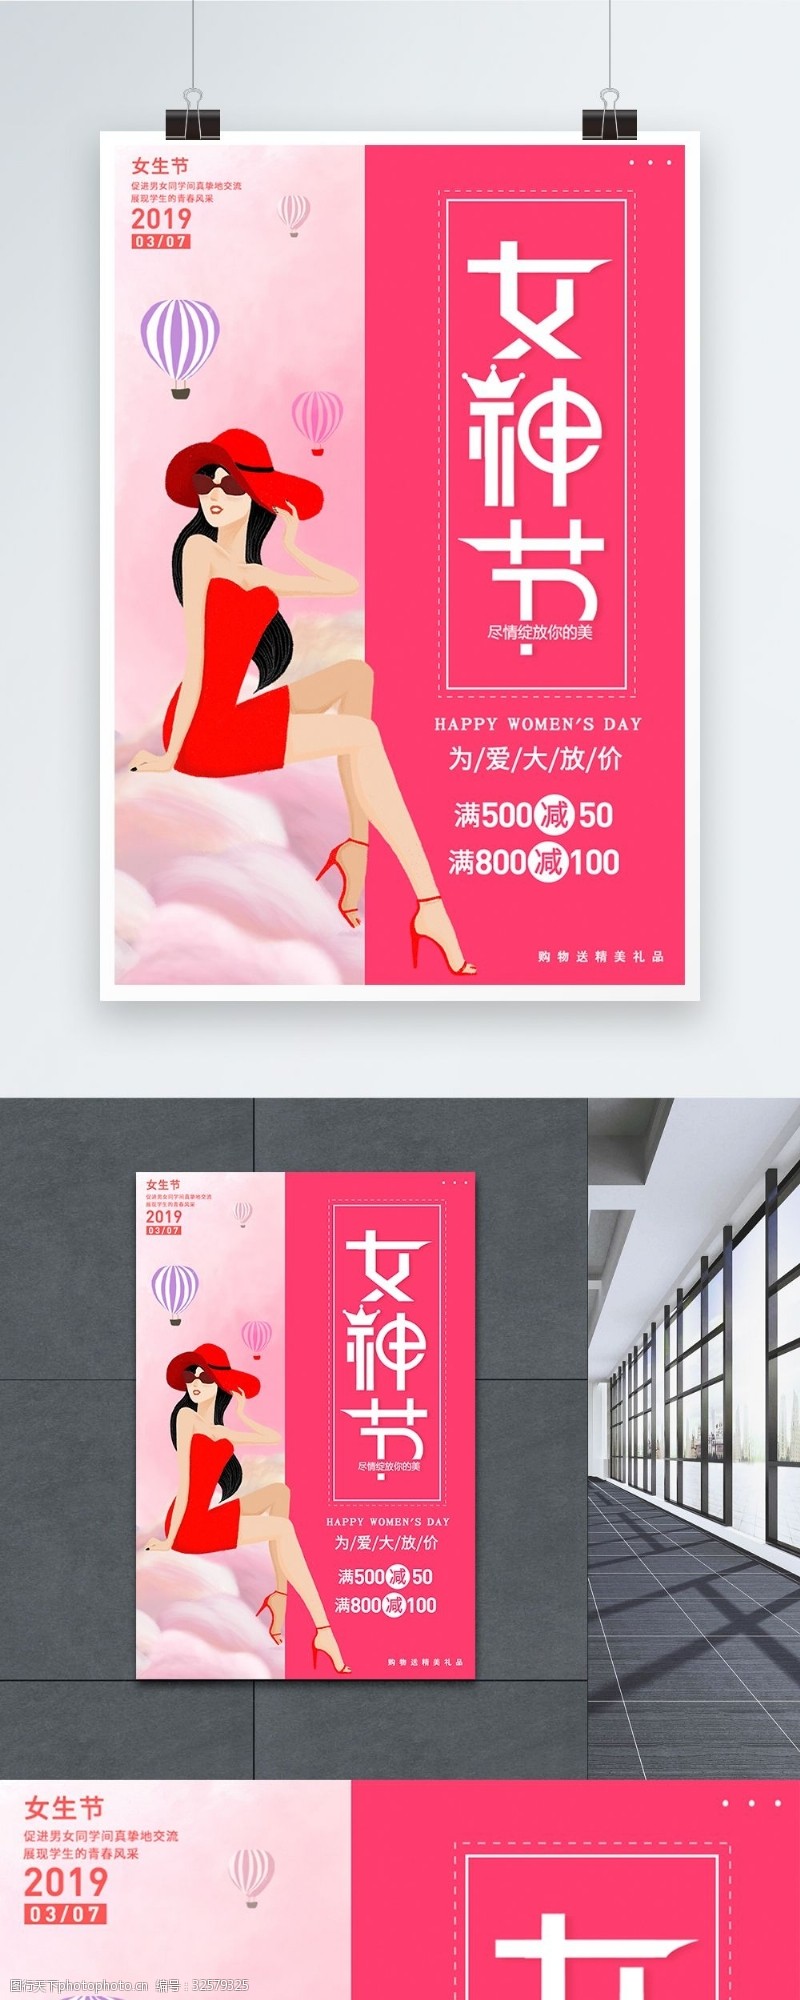 7月促销女生节节促销海报